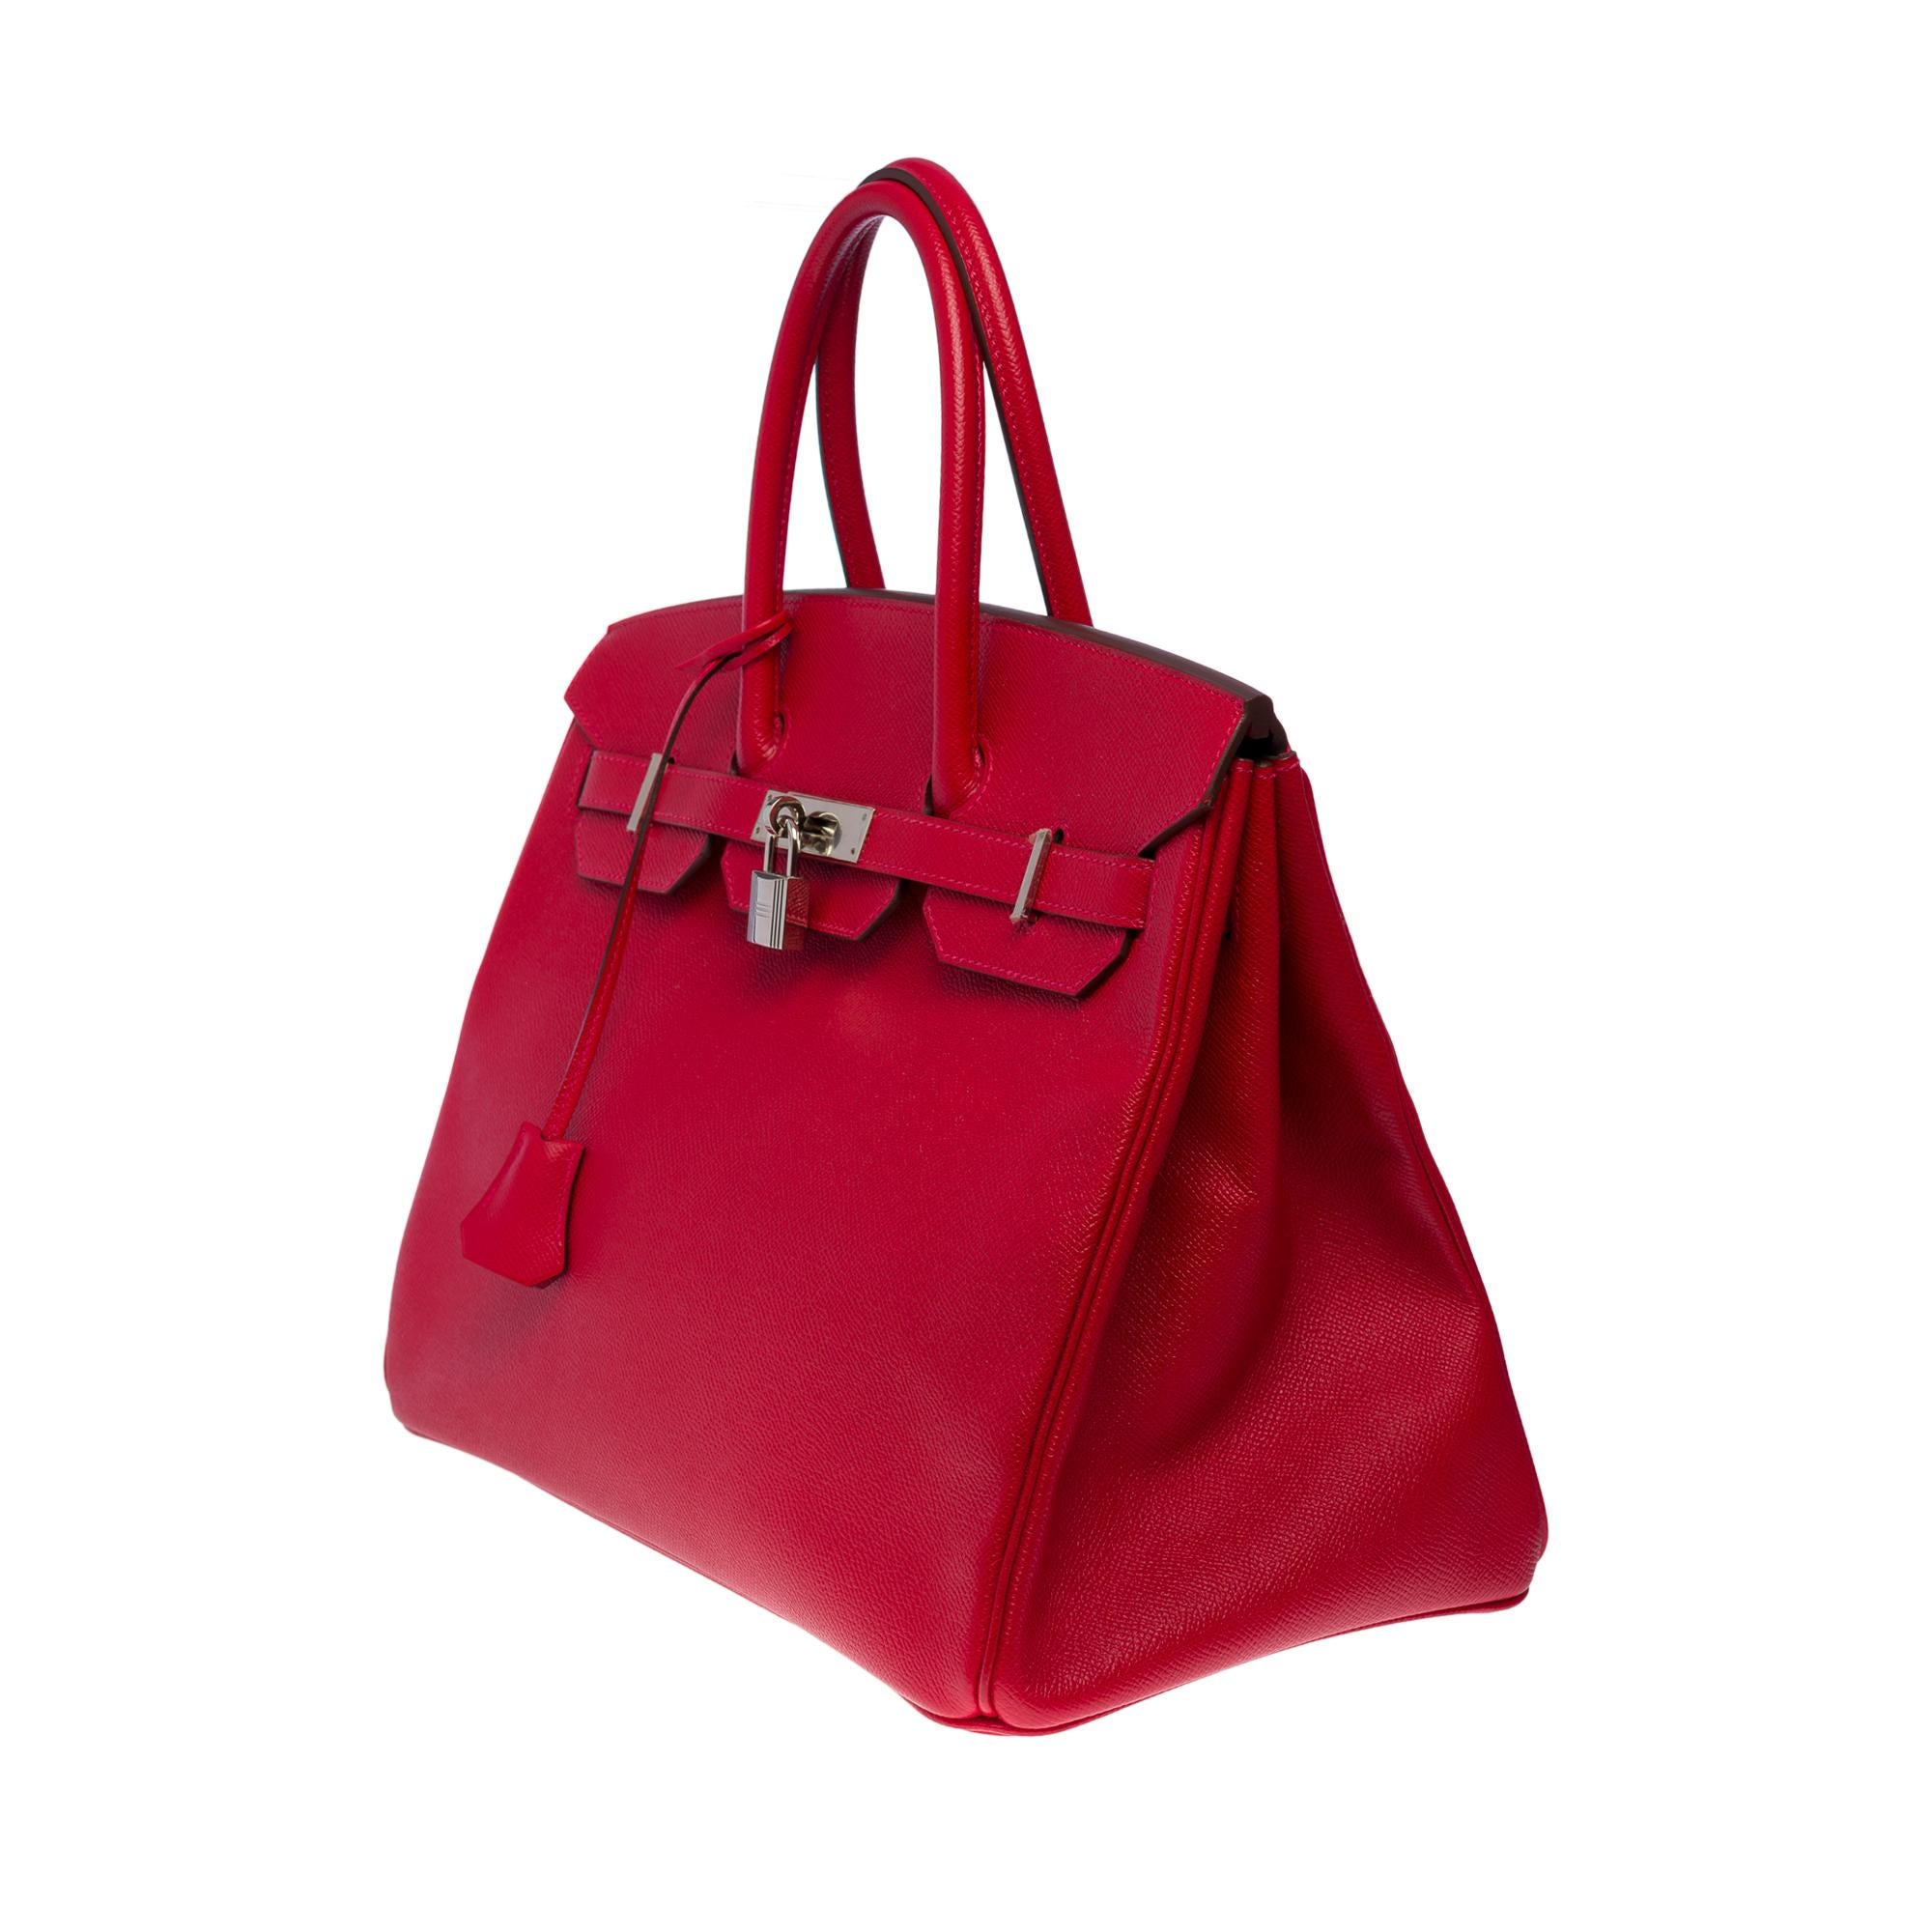 Stunning Hermès Birkin 35 handbag in Rouge Casaque Epsom leather, SHW In Excellent Condition In Paris, IDF